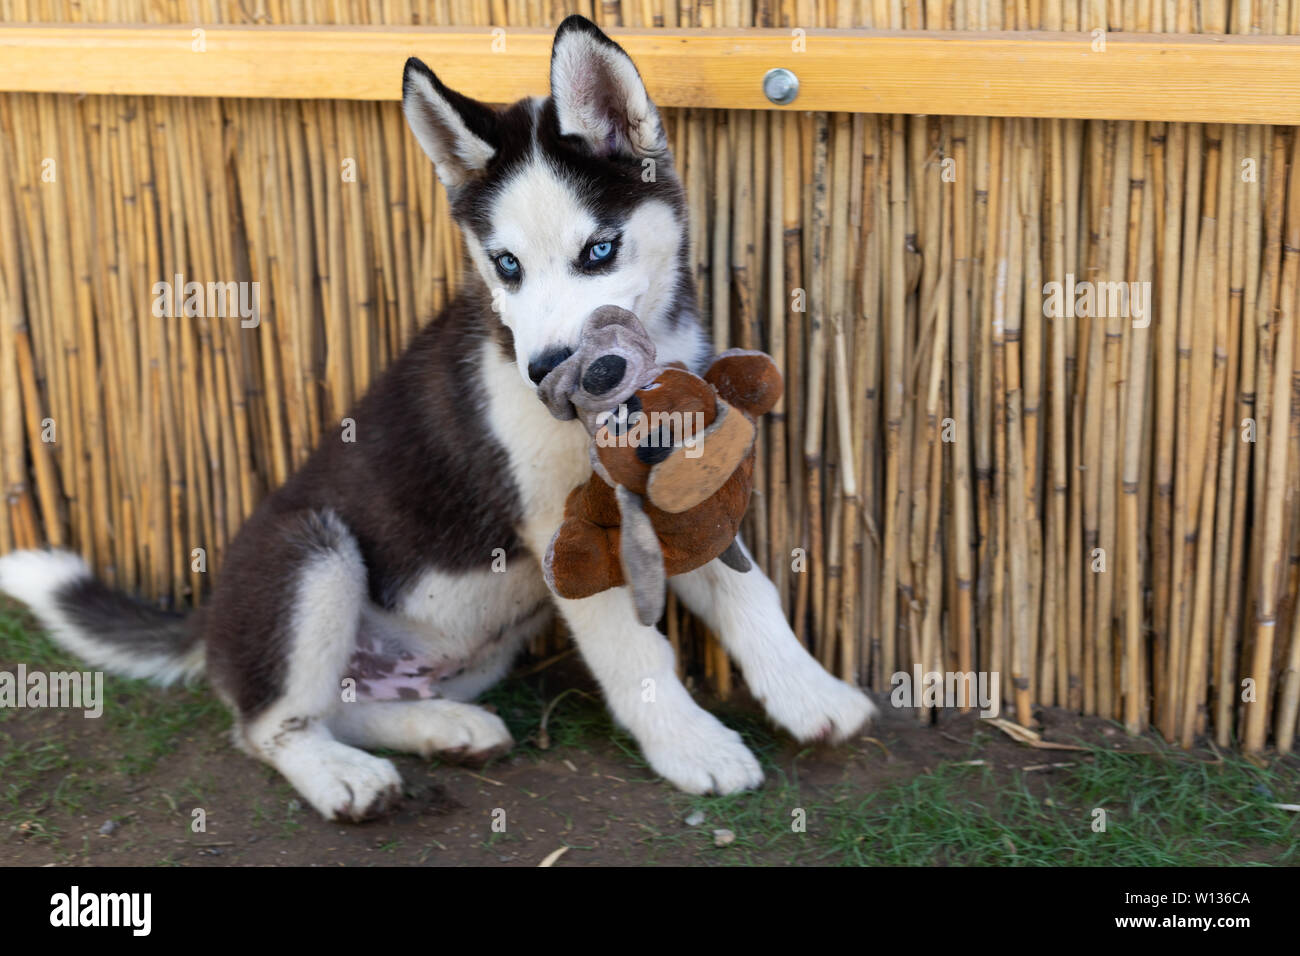 Piccolo grazioso cucciolo husky seduto a terra - cane di razza pura Foto Stock